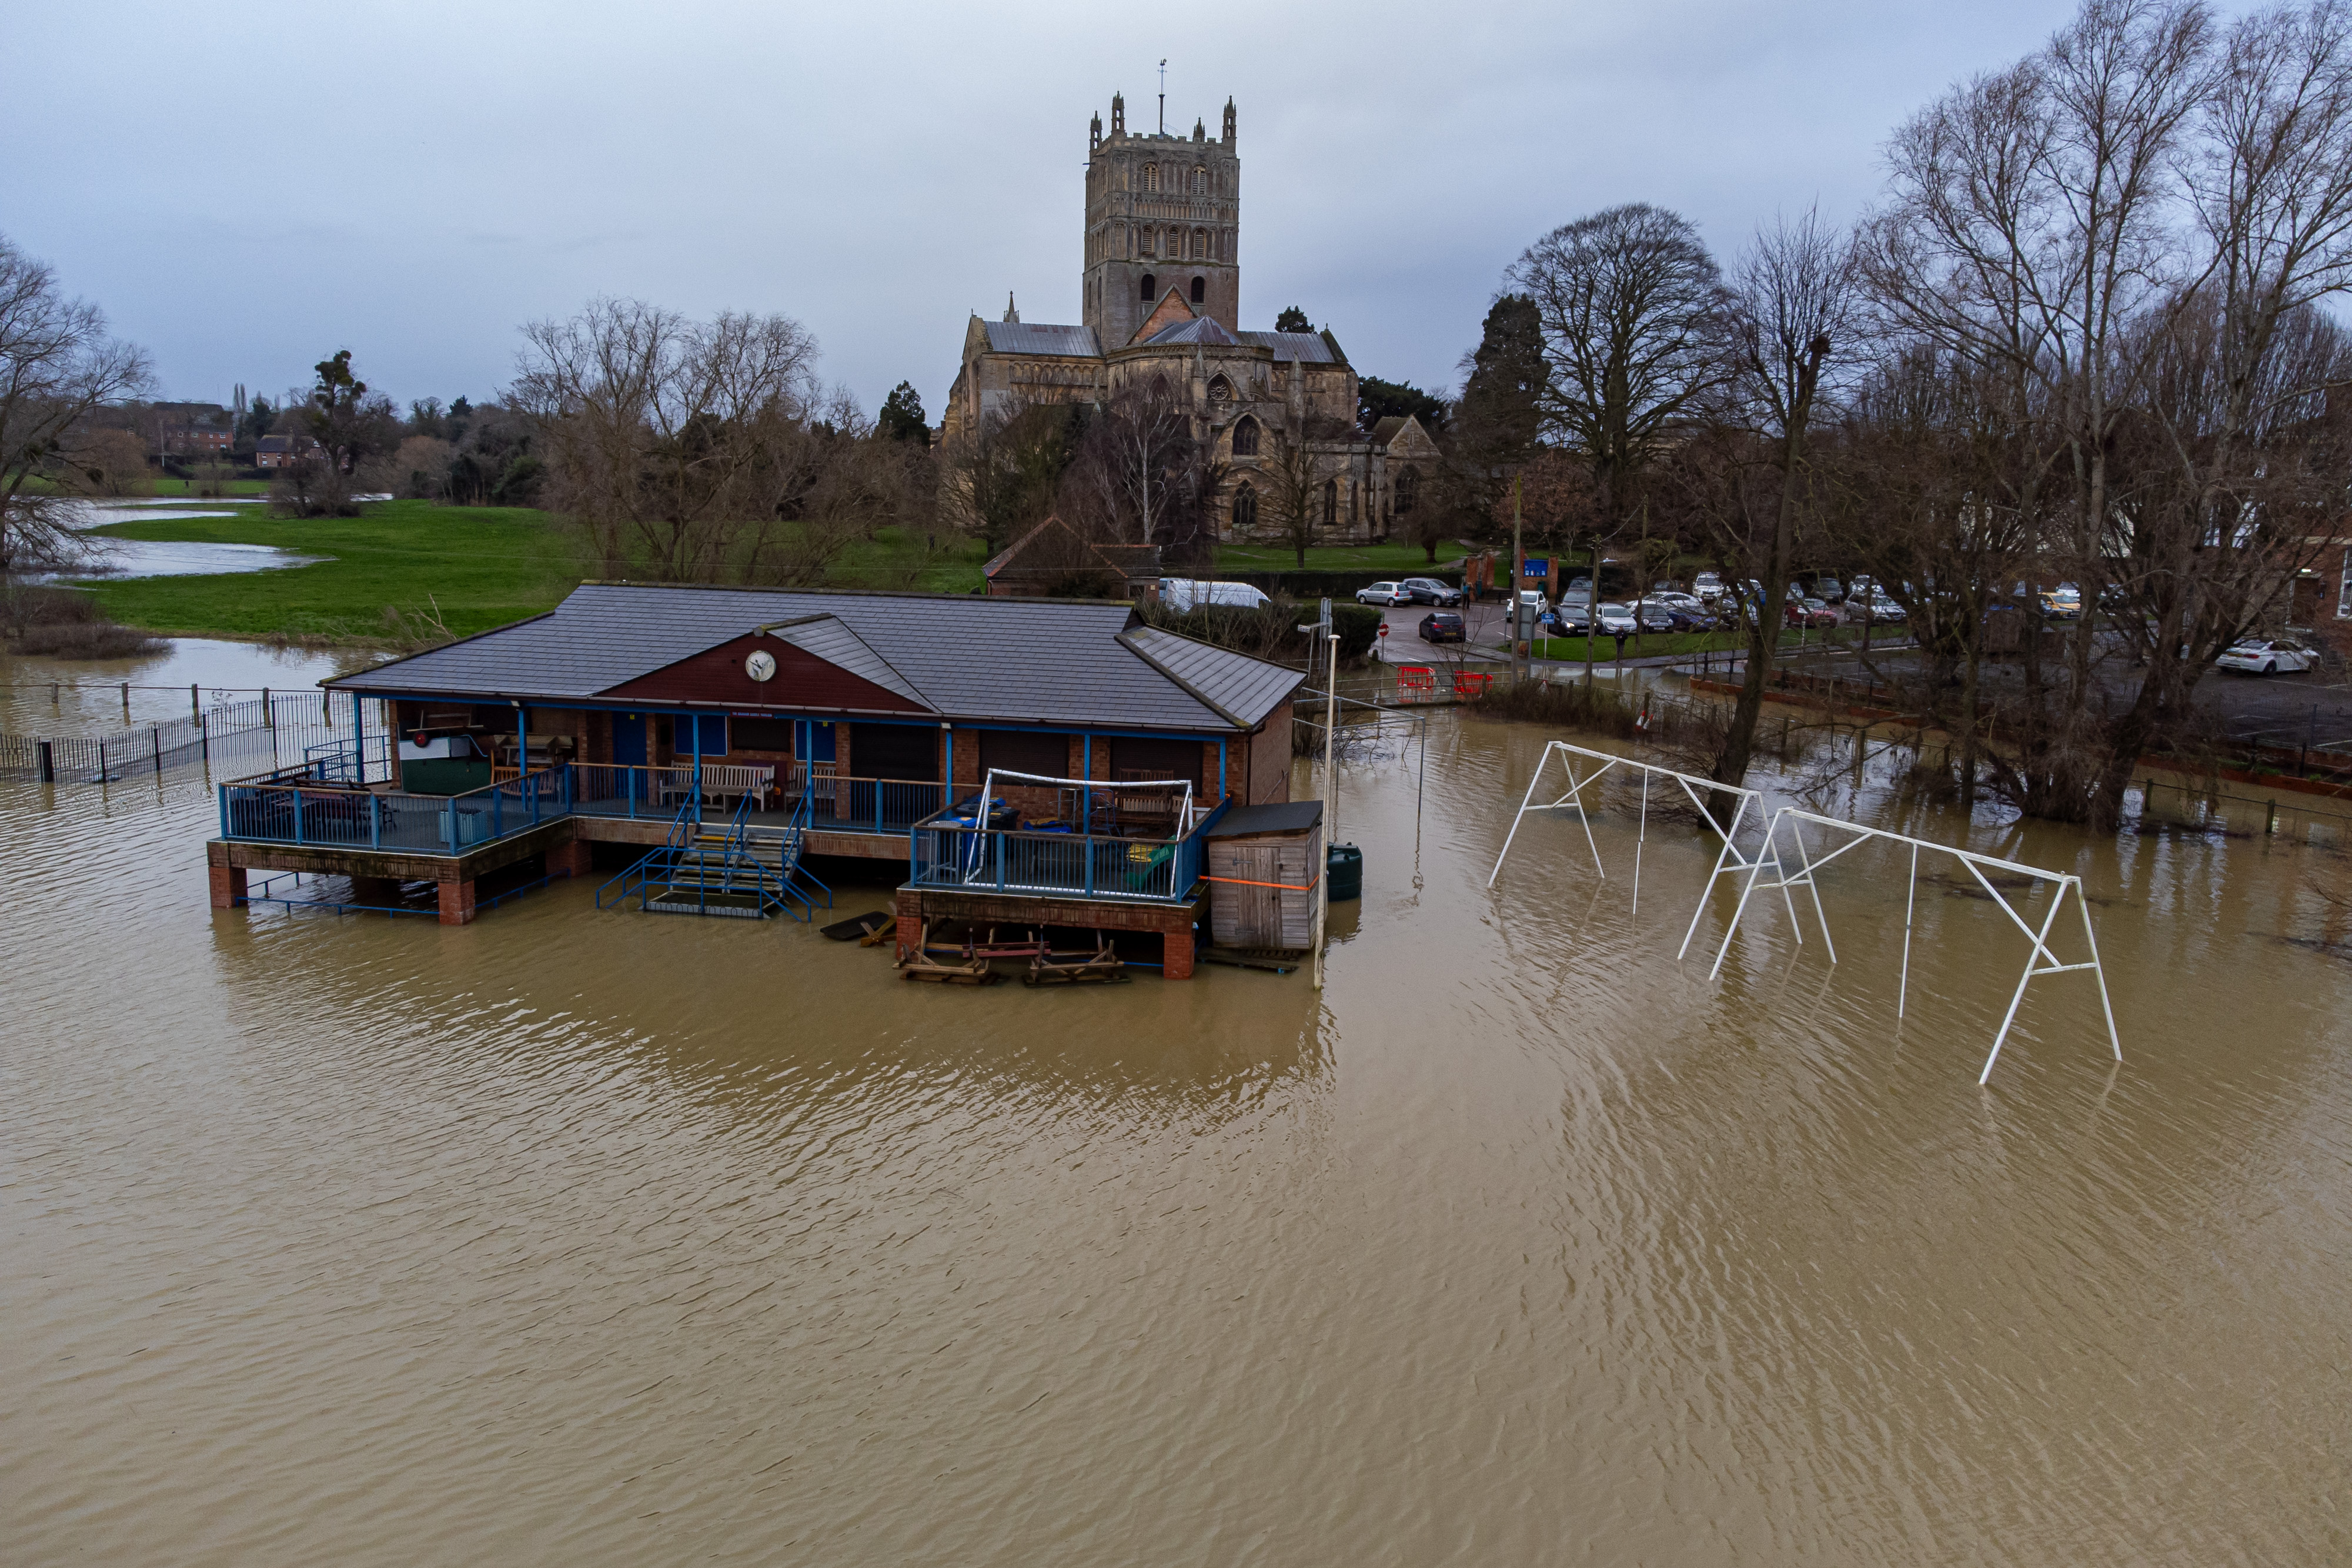 Der Pavillon des Tewkesbury Cricket Clubs wurde am Freitag nach heftigen Regenfällen durch den Sturm Gerrit überschwemmt